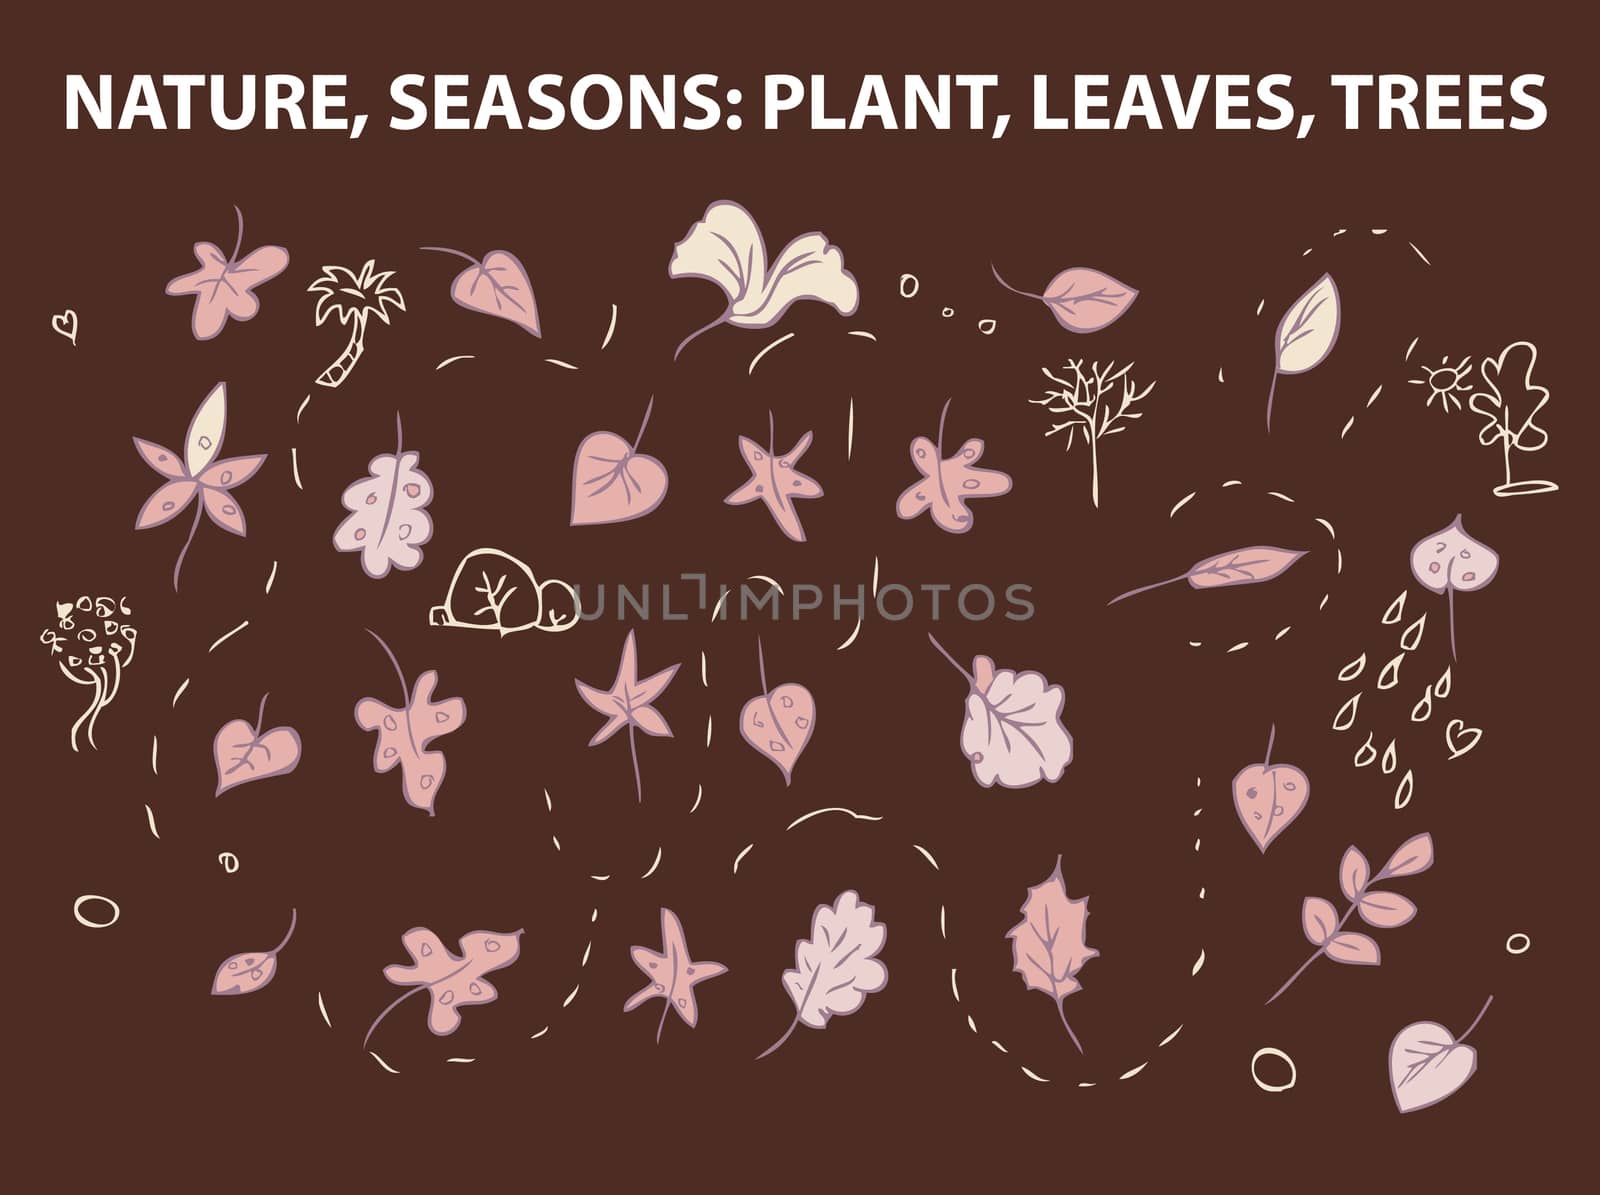 NATURE, SEASONS- PLANT, LEAVES, TREES